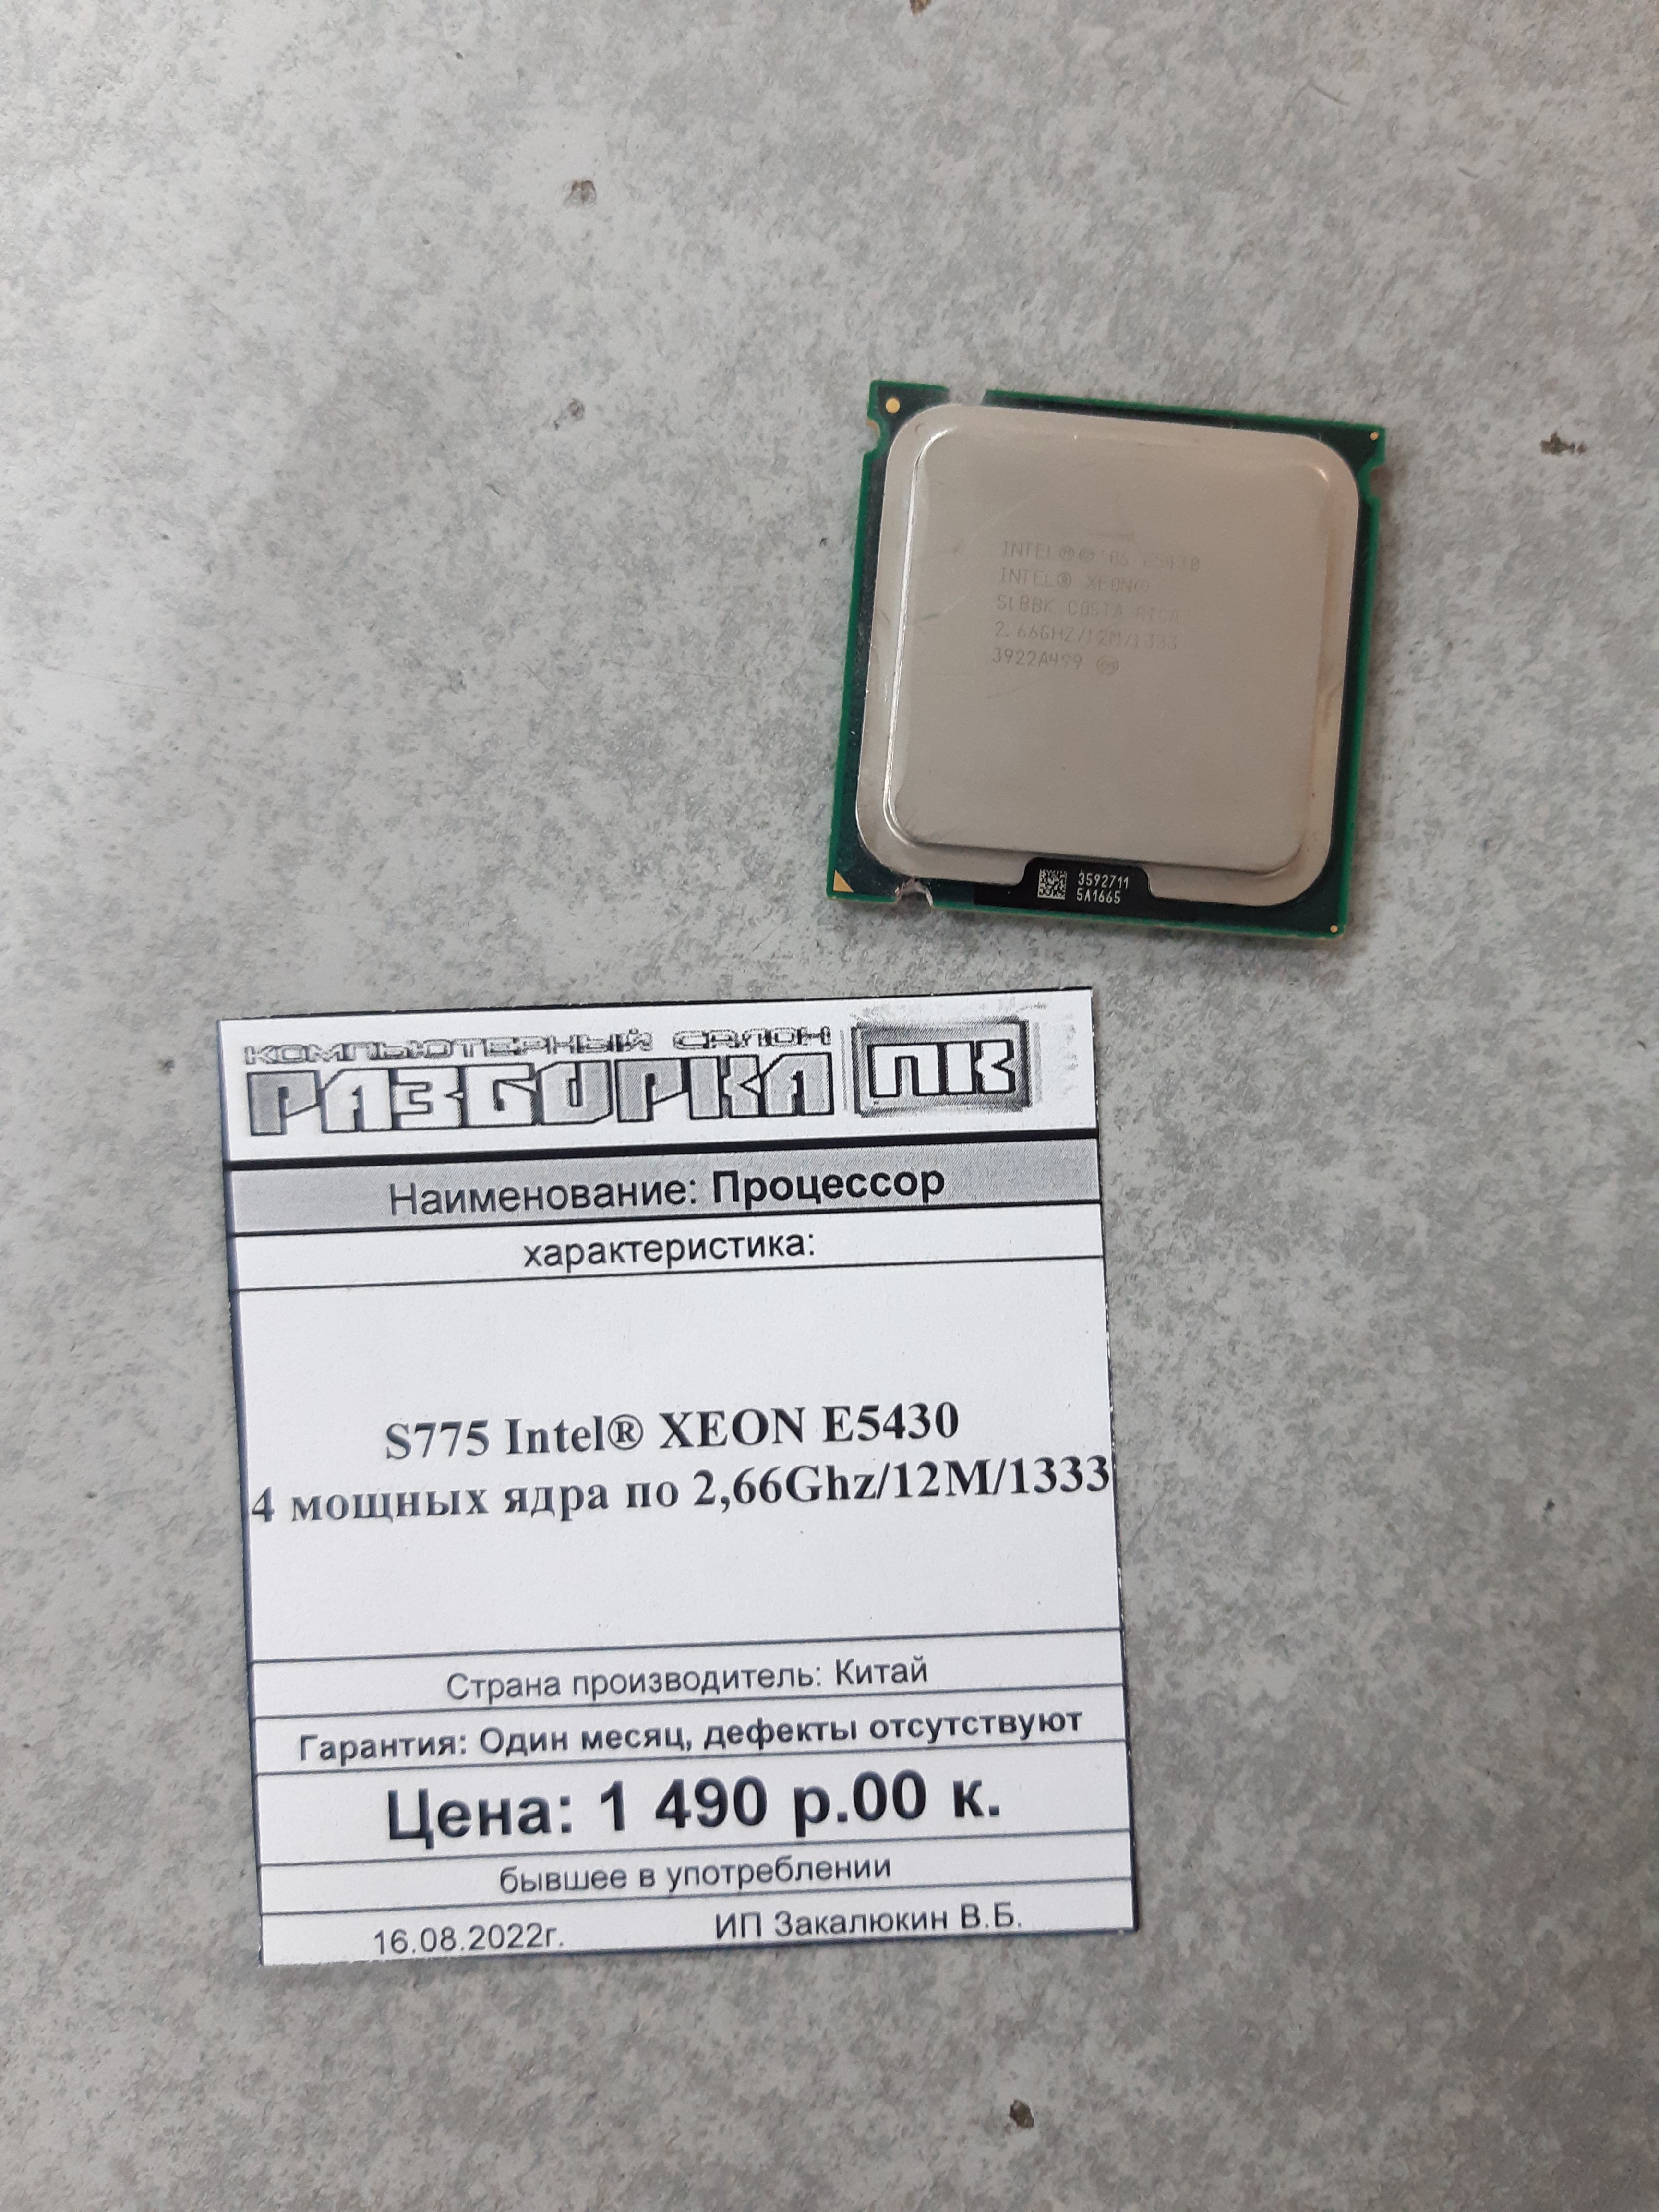 Процессор S775 Intel® XEON E5430 4 мощных ядра